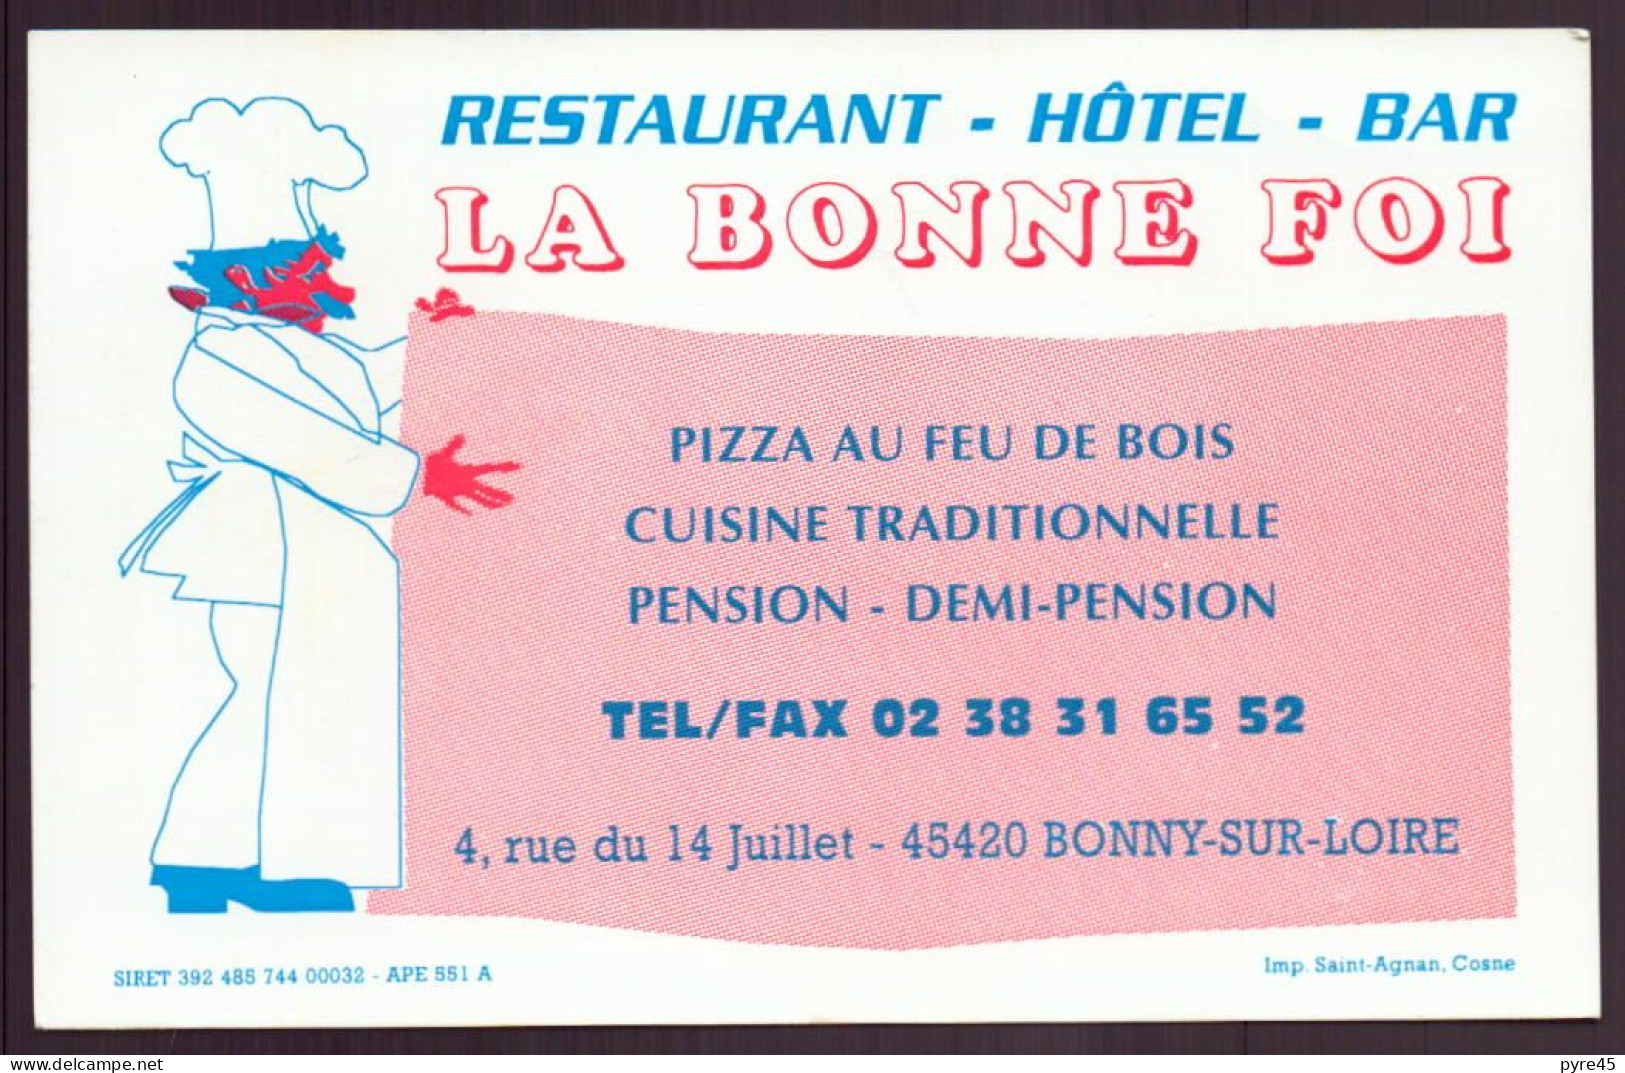 CARTE PUBLICITAIRE LA BONNE FOI A BONNY SUR LOIRE RESTAURANT HOTEL BAR - Tarjetas De Visita